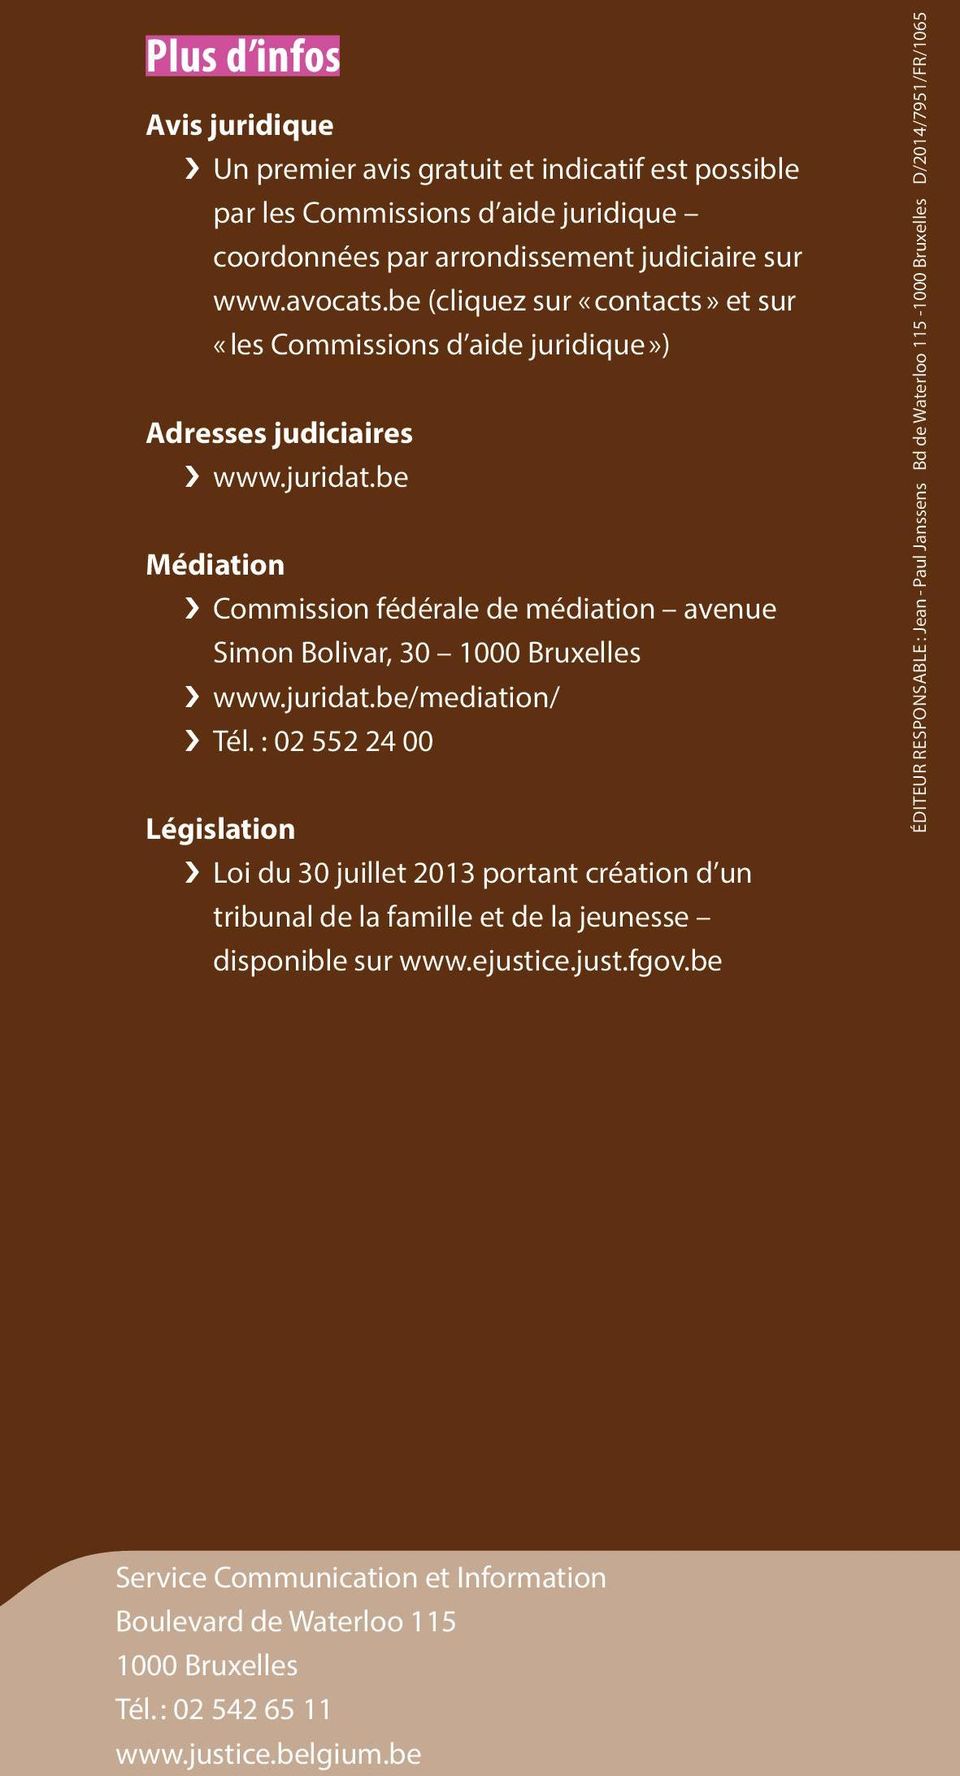 be Médiation Commission fédérale de médiation avenue Simon Bolivar, 30 1000 Bruxelles www.juridat.be/mediation/ Tél.